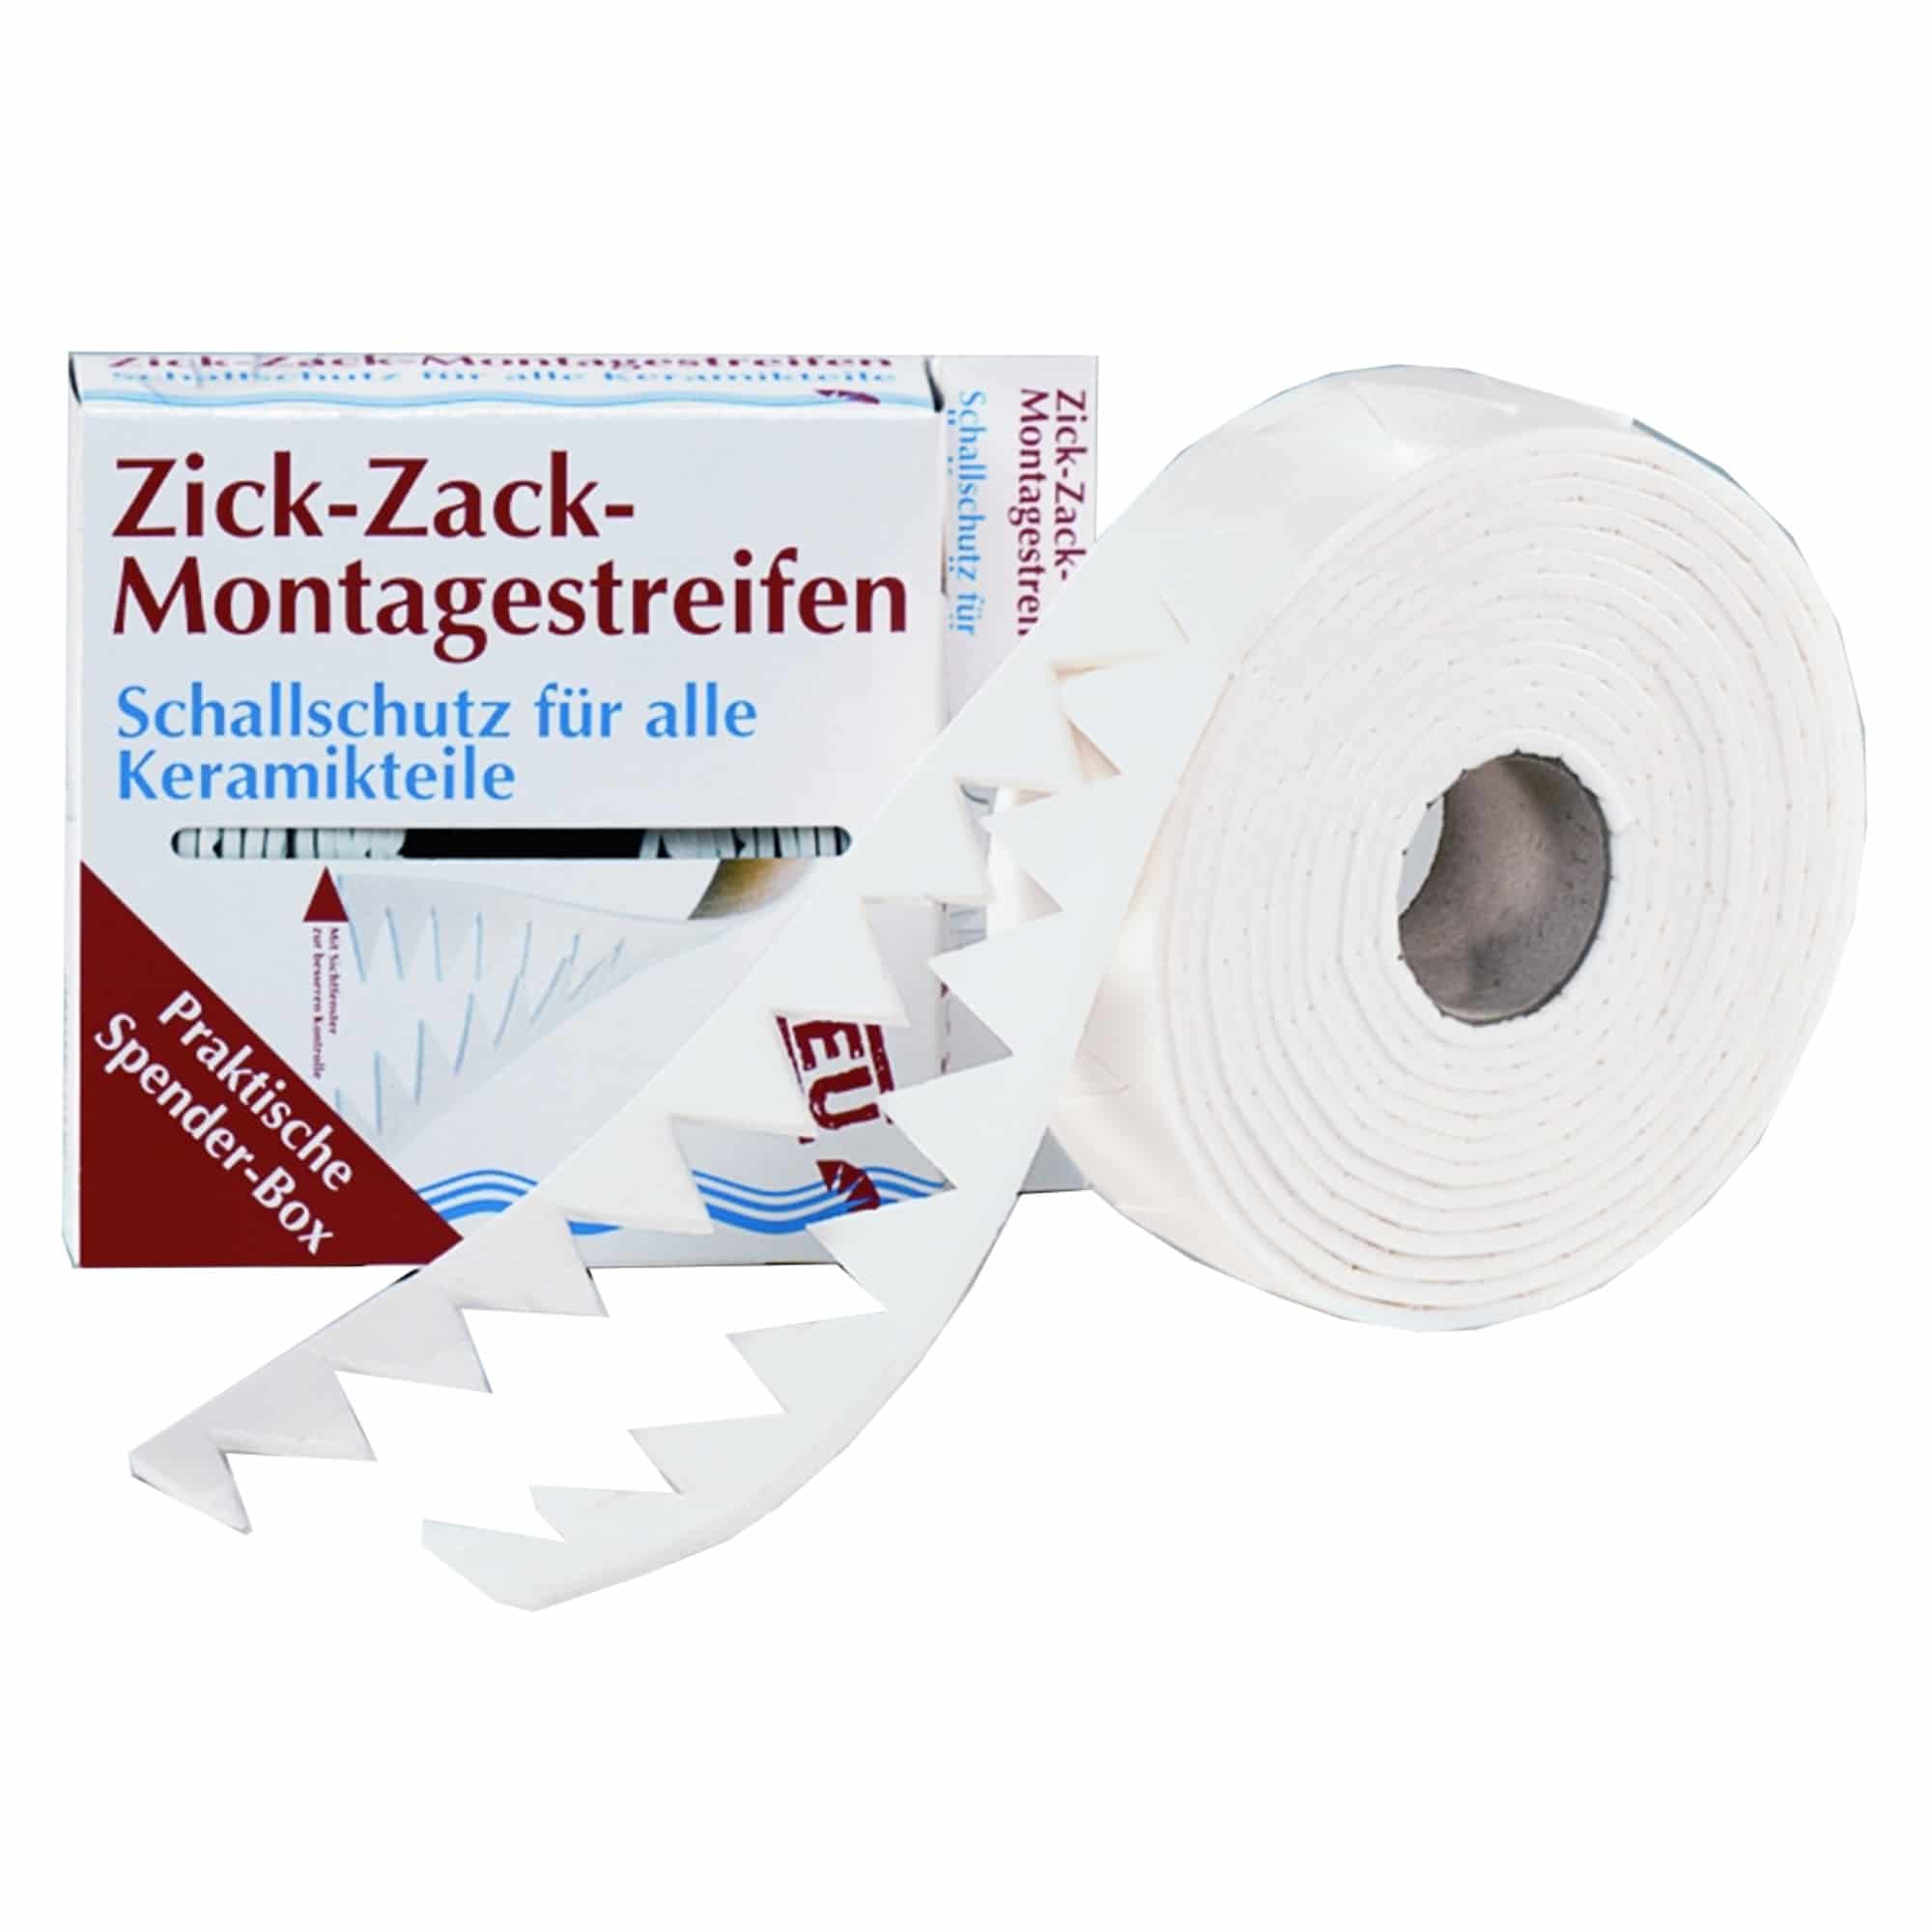 Ulith Zick Zack Montageprofil 3 mm x 36 mm x 4,5 m bietet flexiblen Schallschutz zur Unterbrechung von Schallbrücken zwischen Wandfliese und hängenden Keramikobjekten